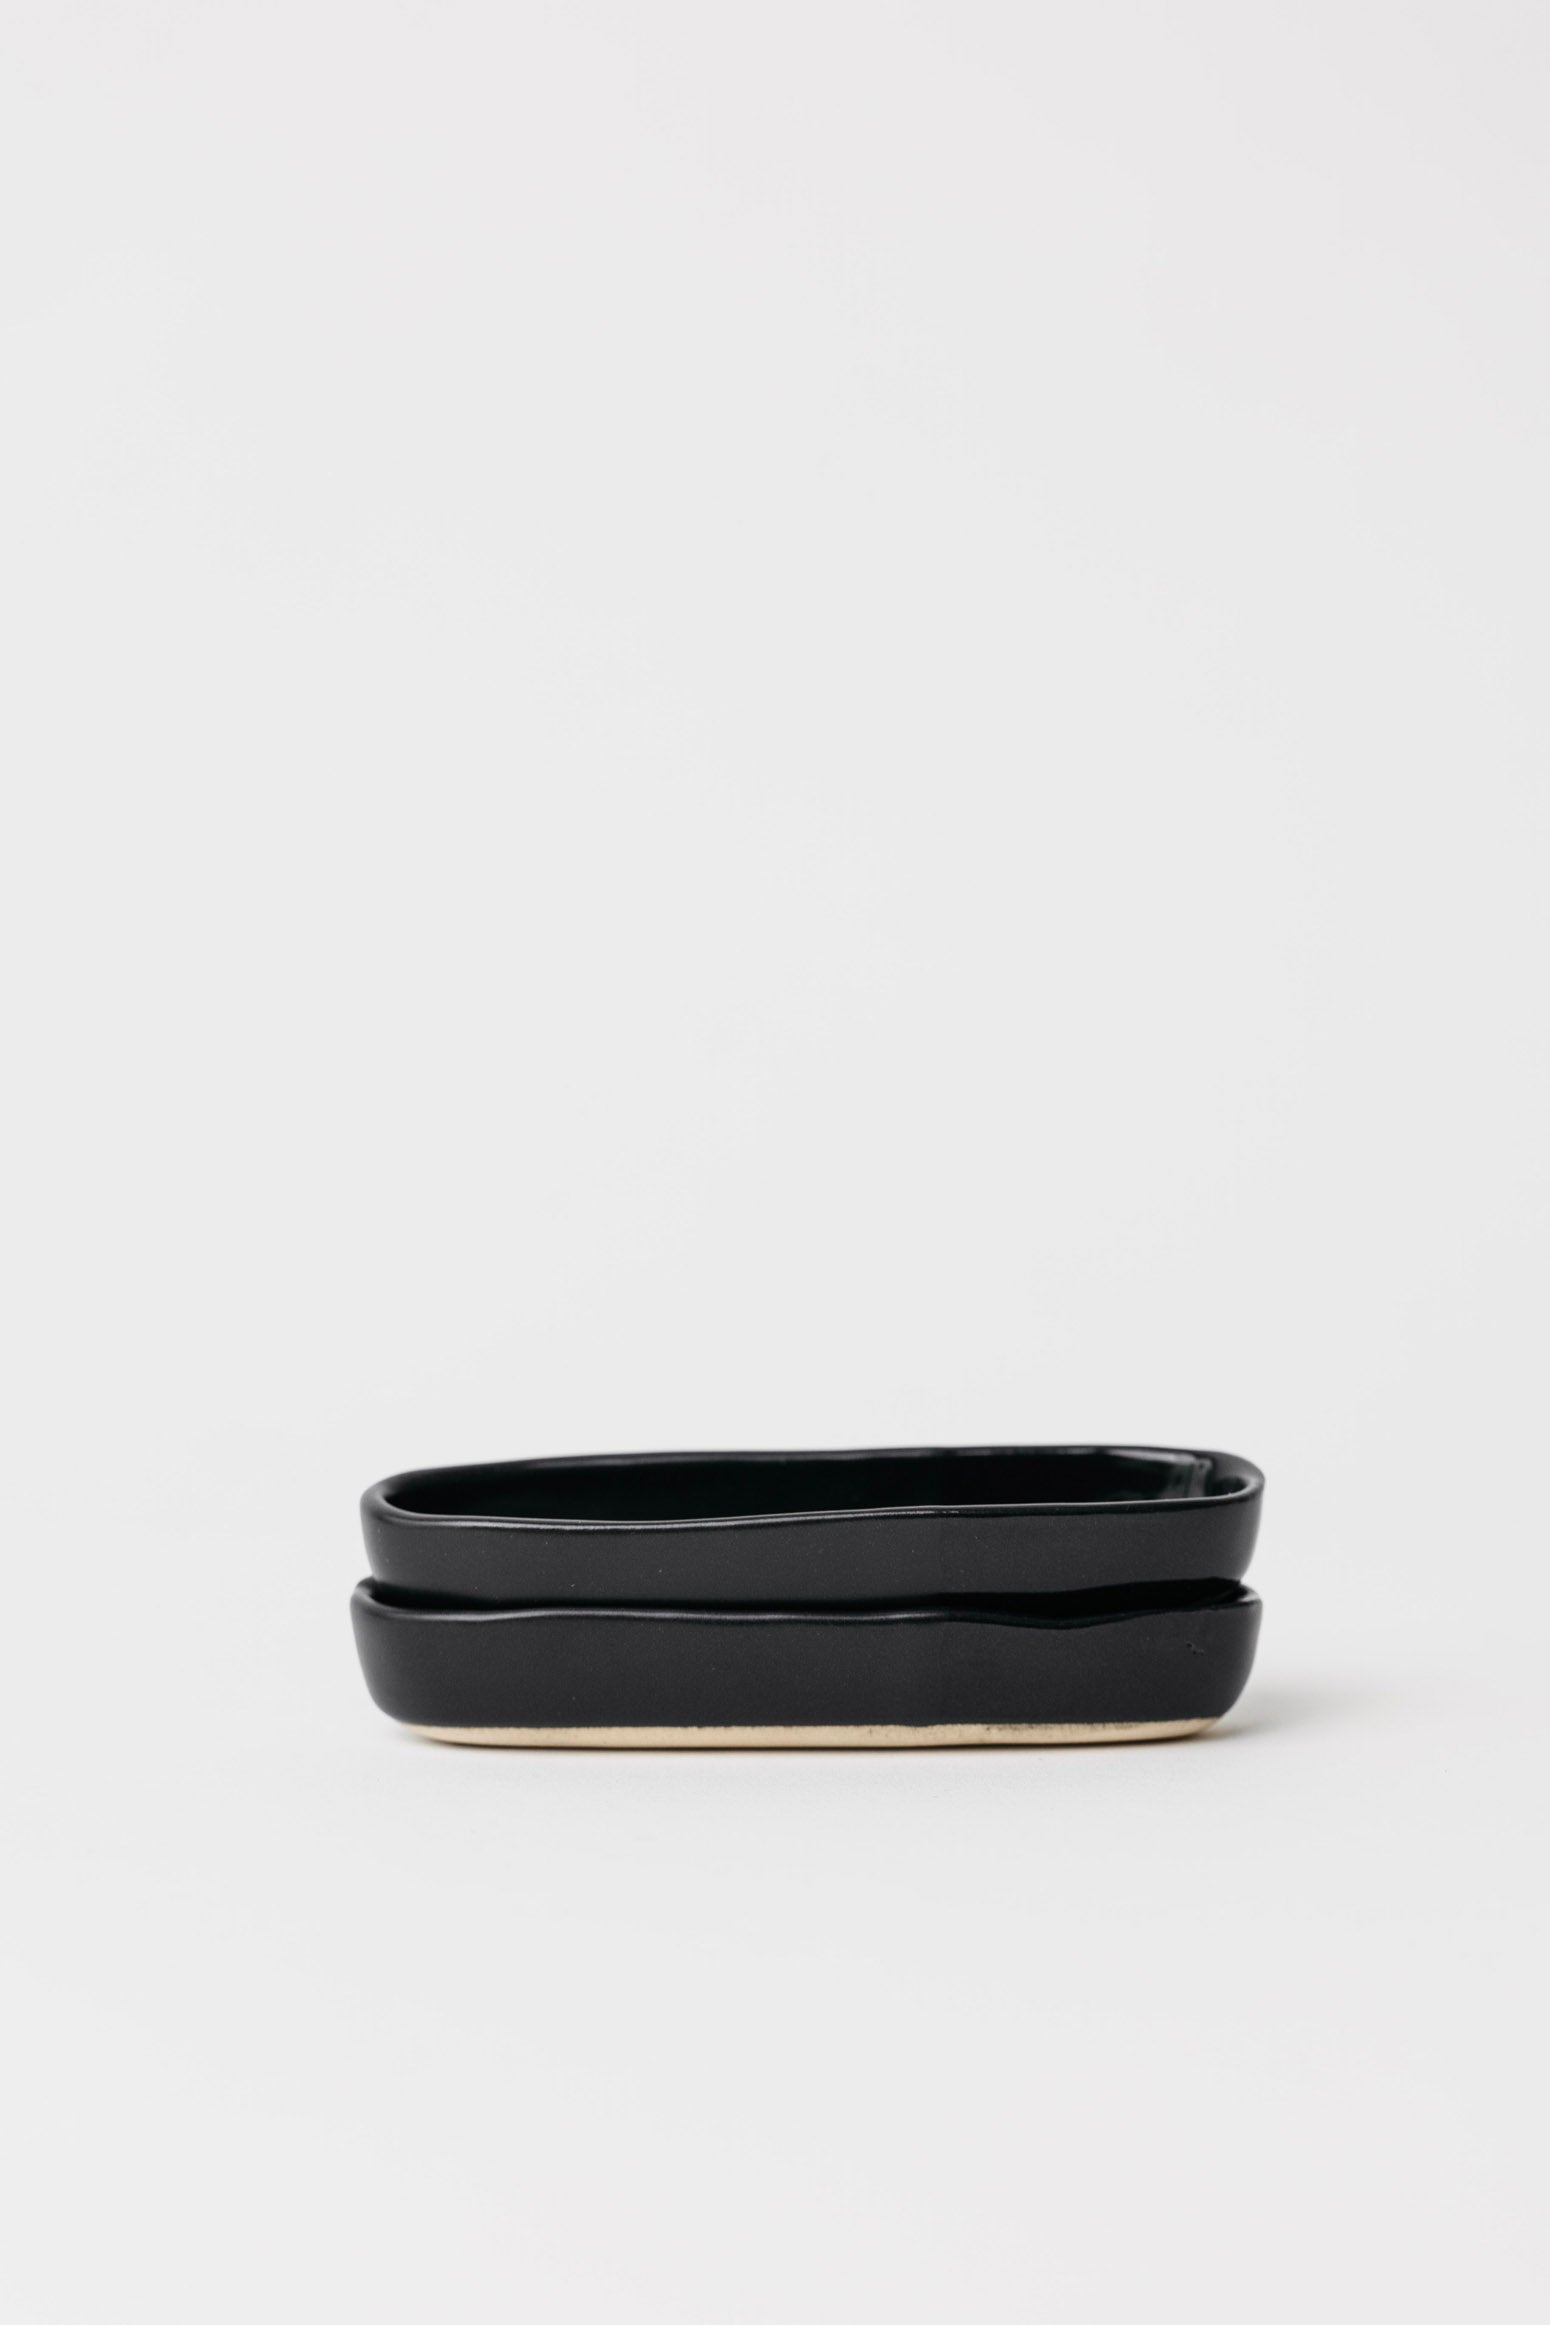 Sable Olive Bowl - Matte Black/Glossy Black - 5 inch